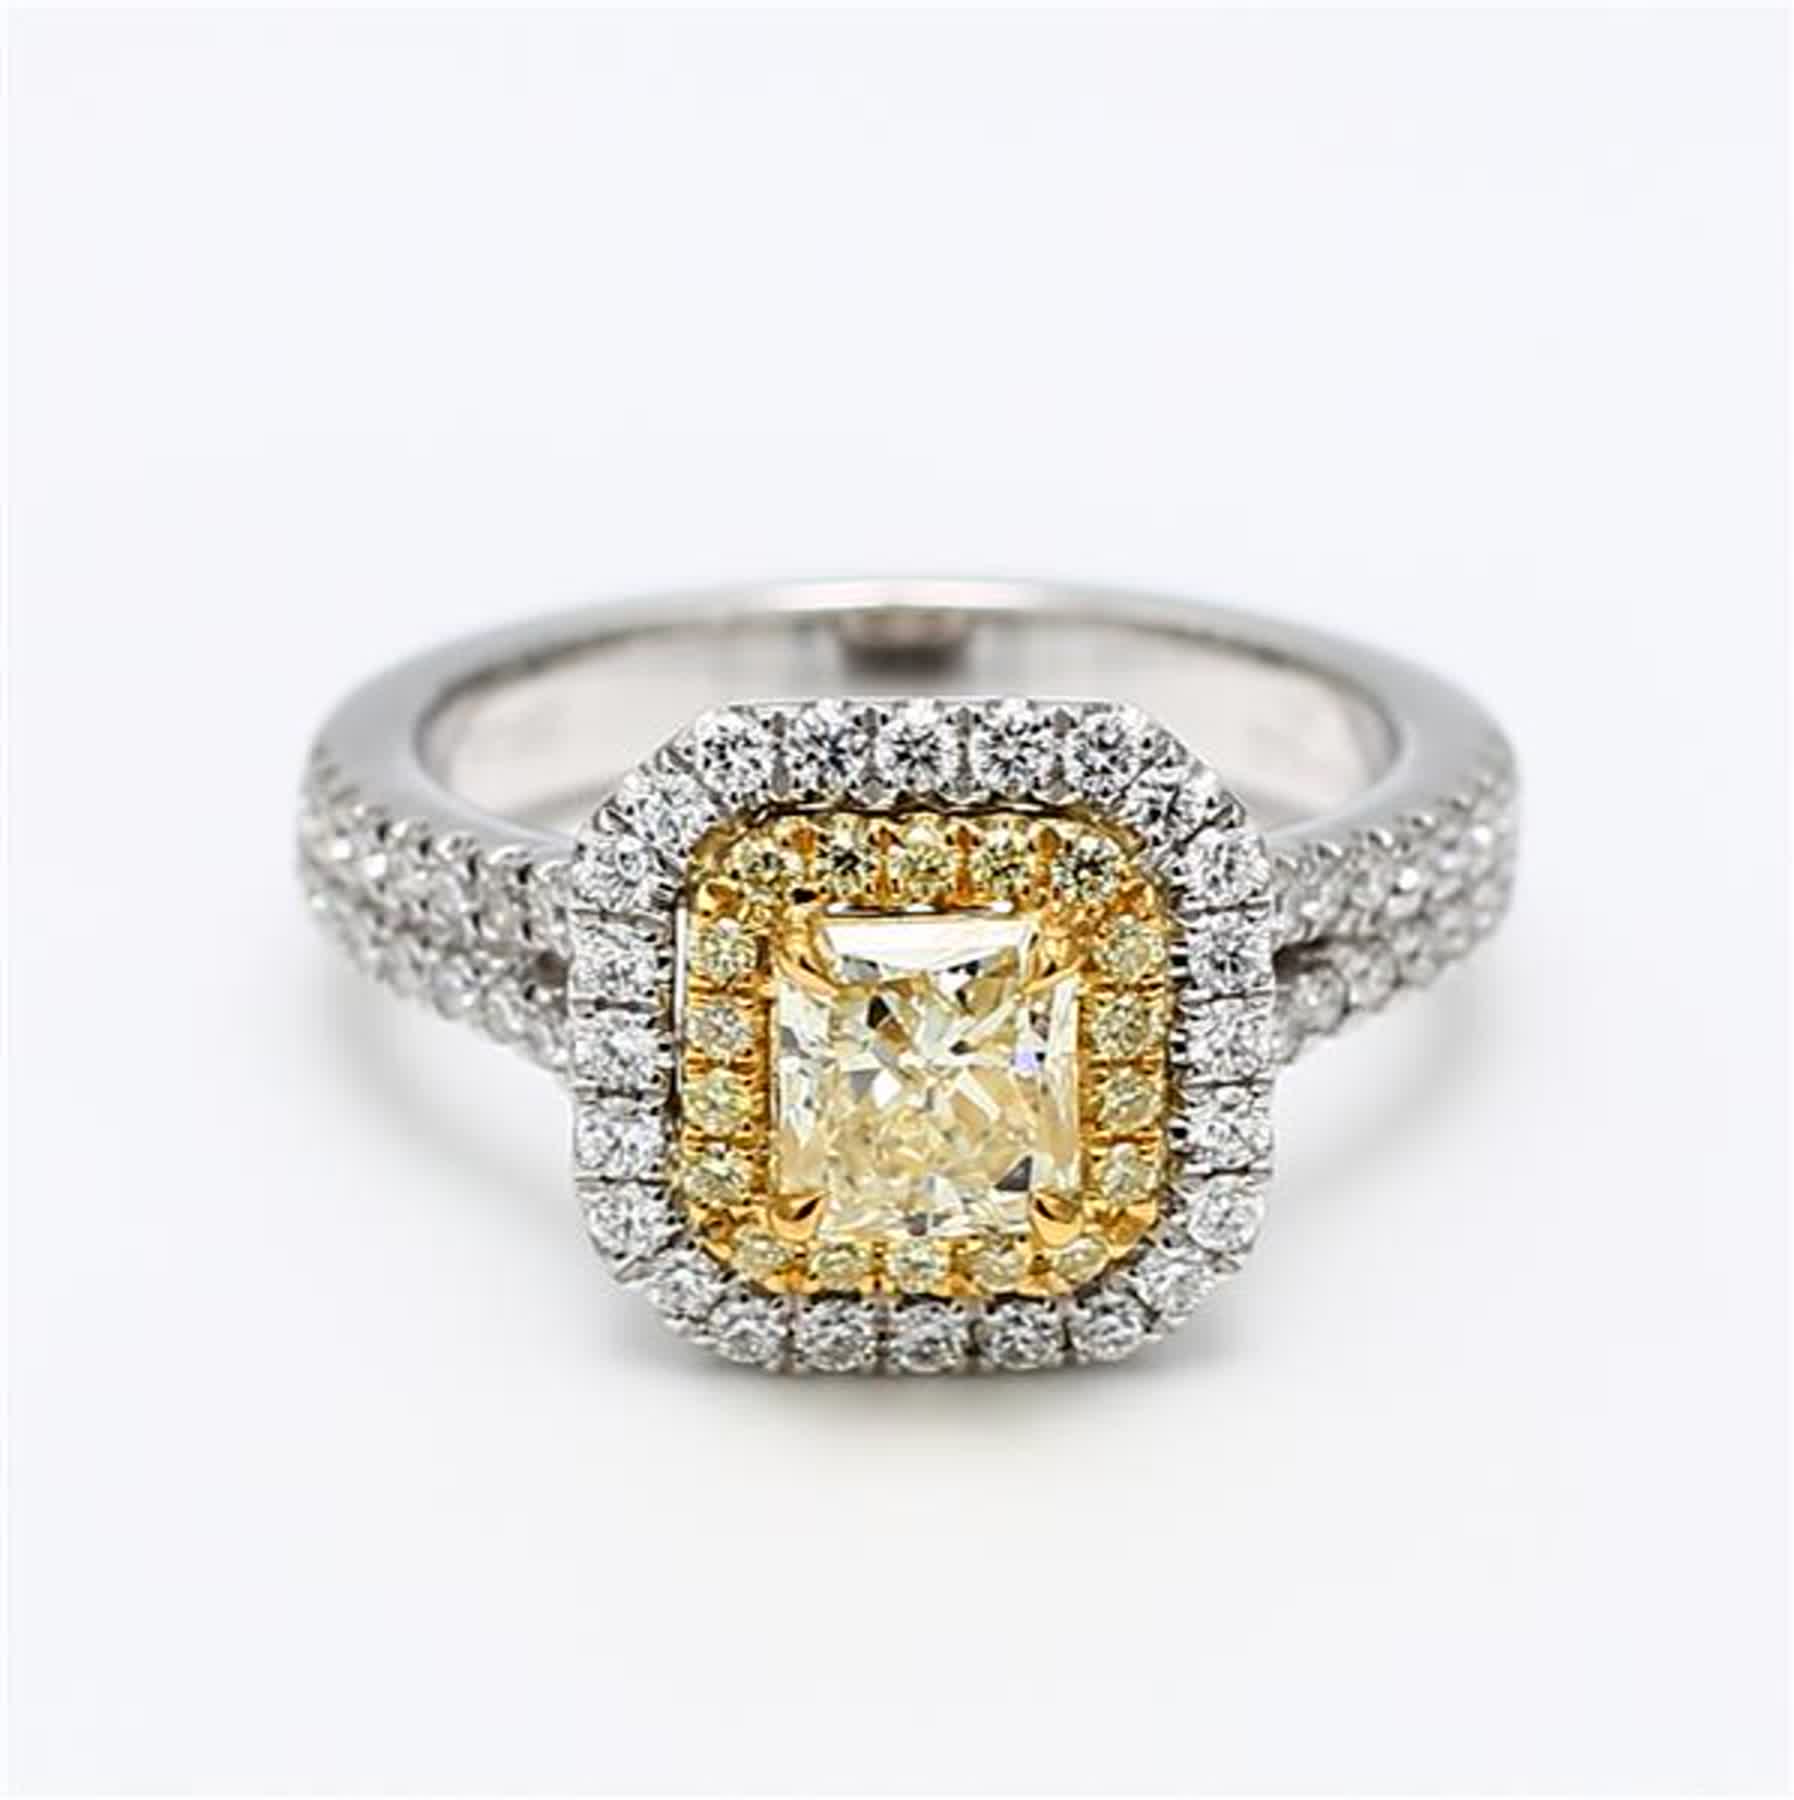 Bague plaquée en diamant jaune radiant et blanc de 1.59 carat poids total, certifiée GIA